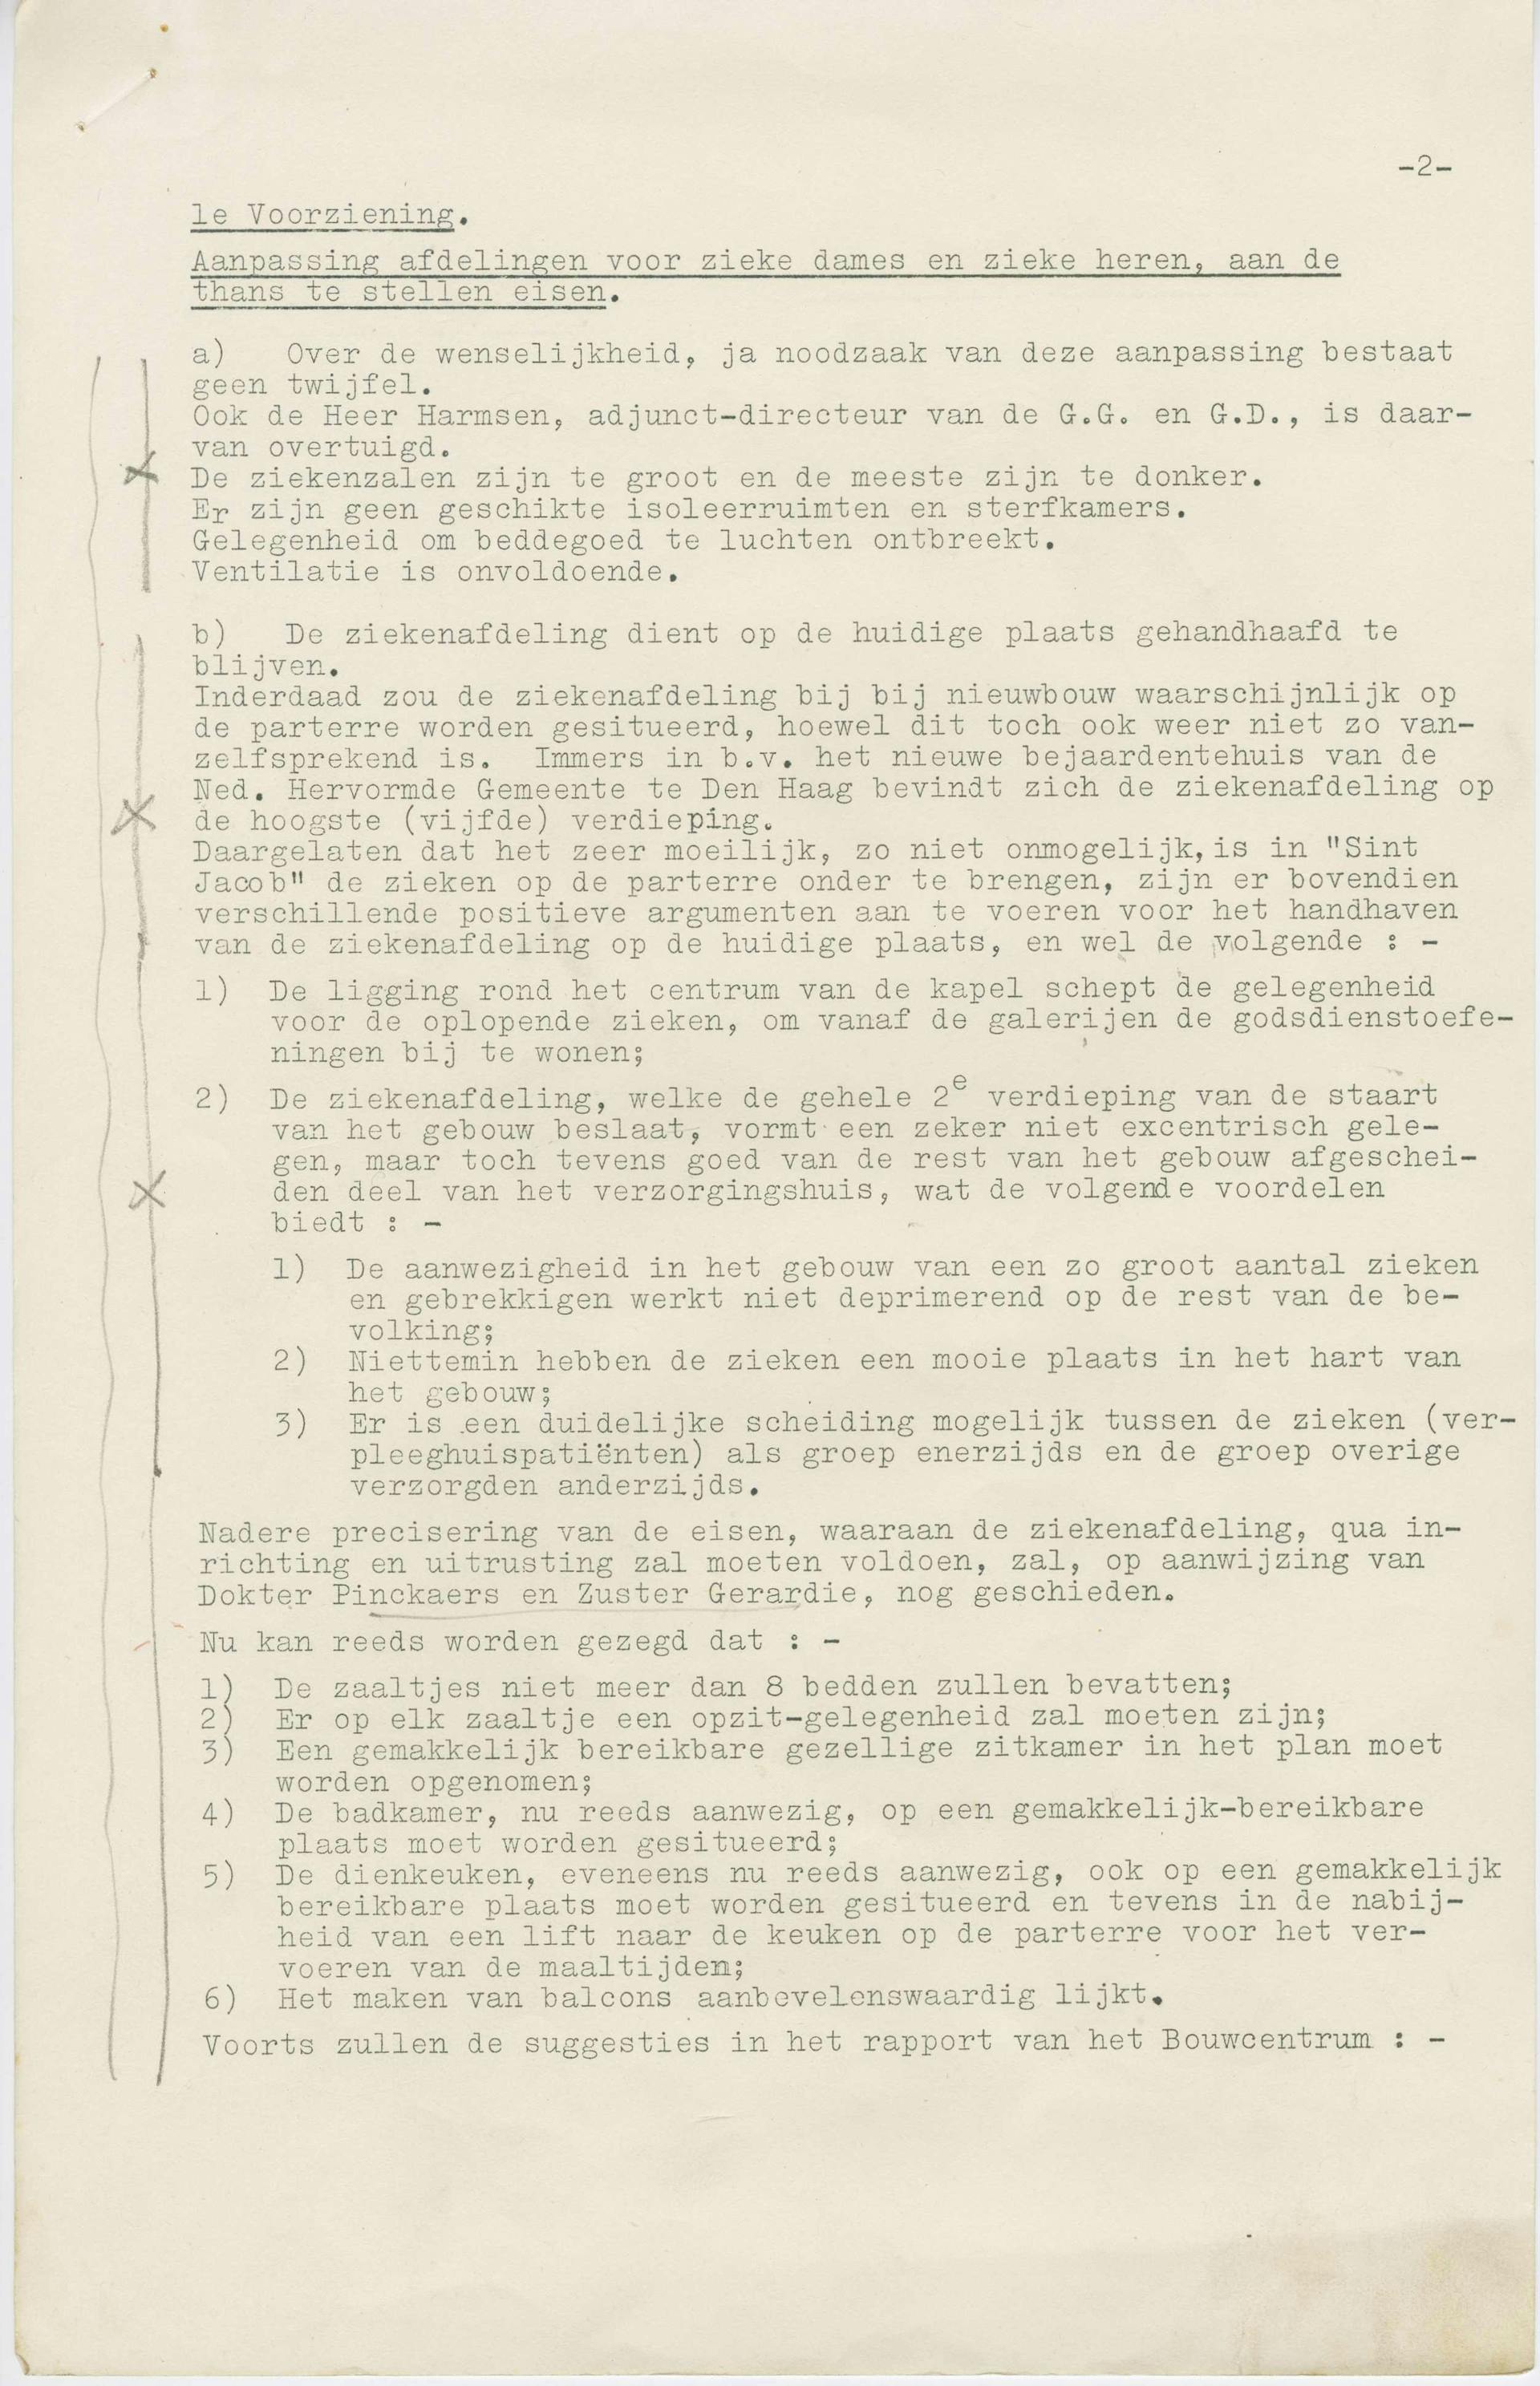  Nota van de bouwcommissie met betrekking tot de aanpassing van de ziekenafdeling van Sint Jacob Gesticht, Amsterdam, 1958. Collectie Het Nieuwe Instituut. 